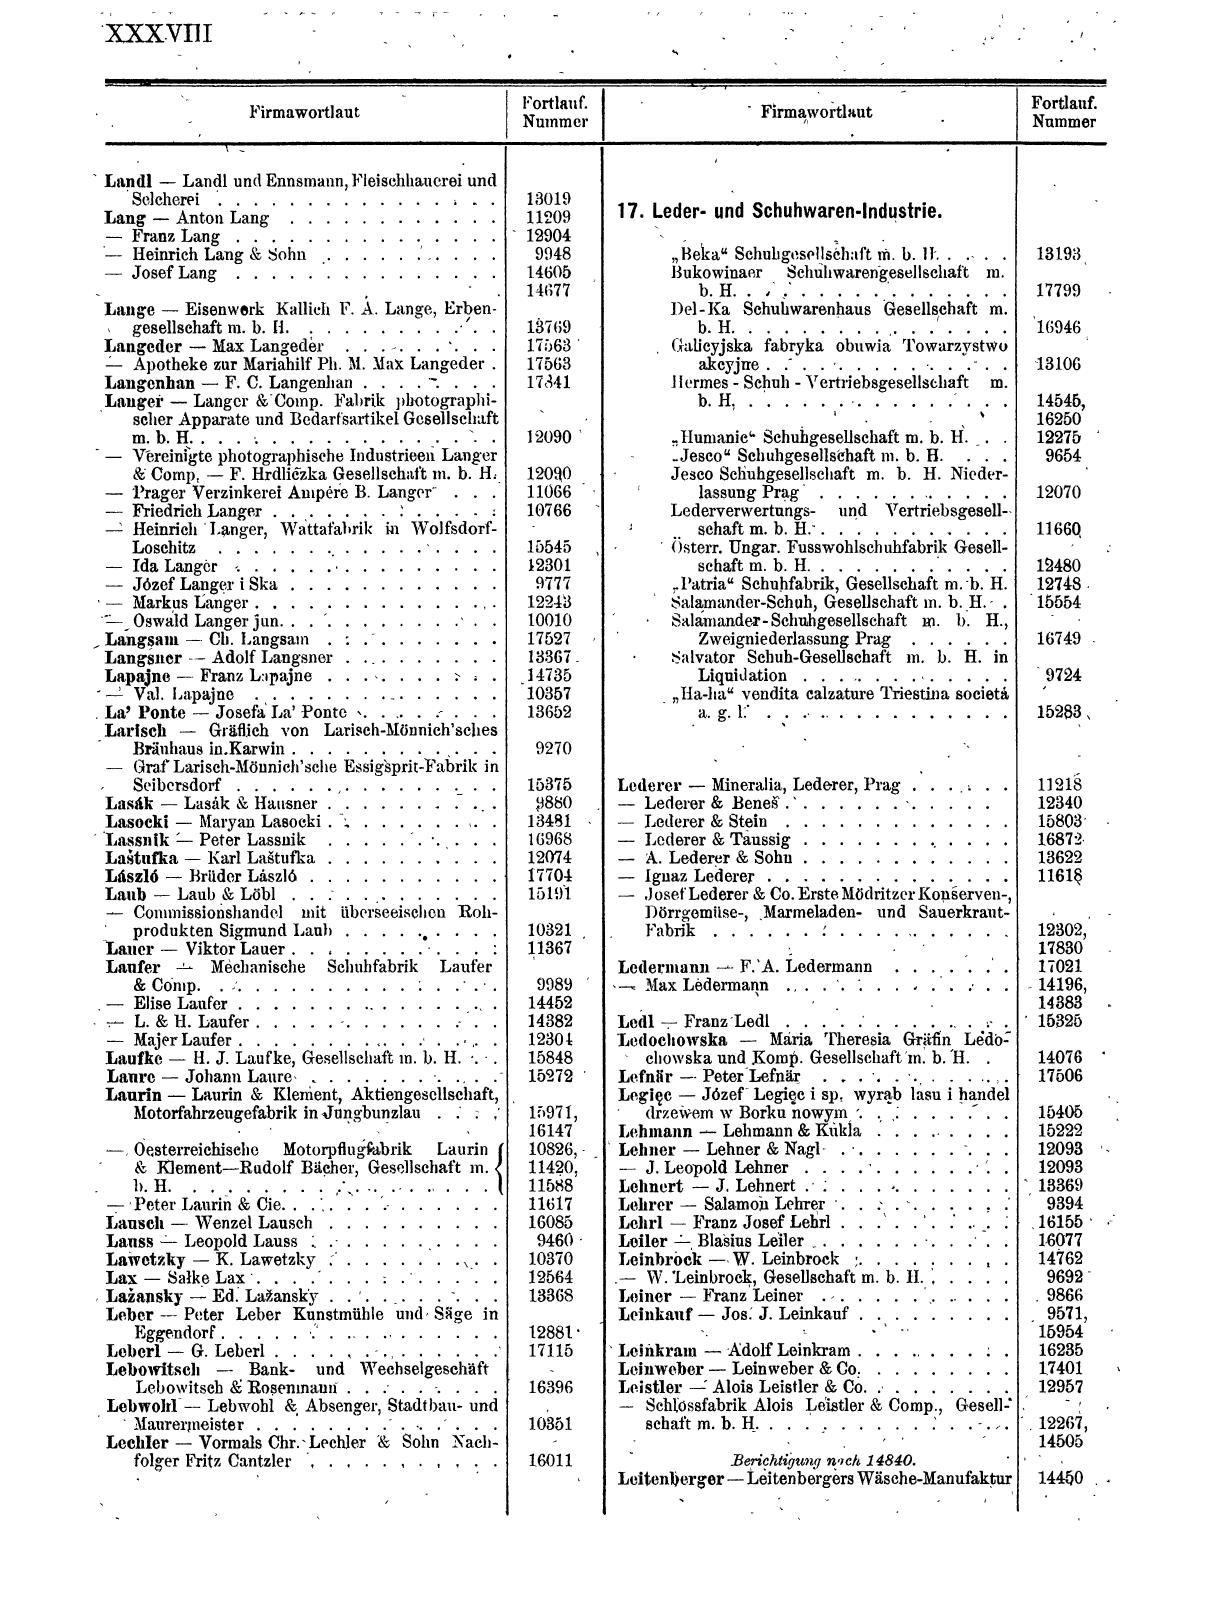 Zentralblatt für die Eintragungen in das Handelsregister 1913, Teil 2 - Seite 42